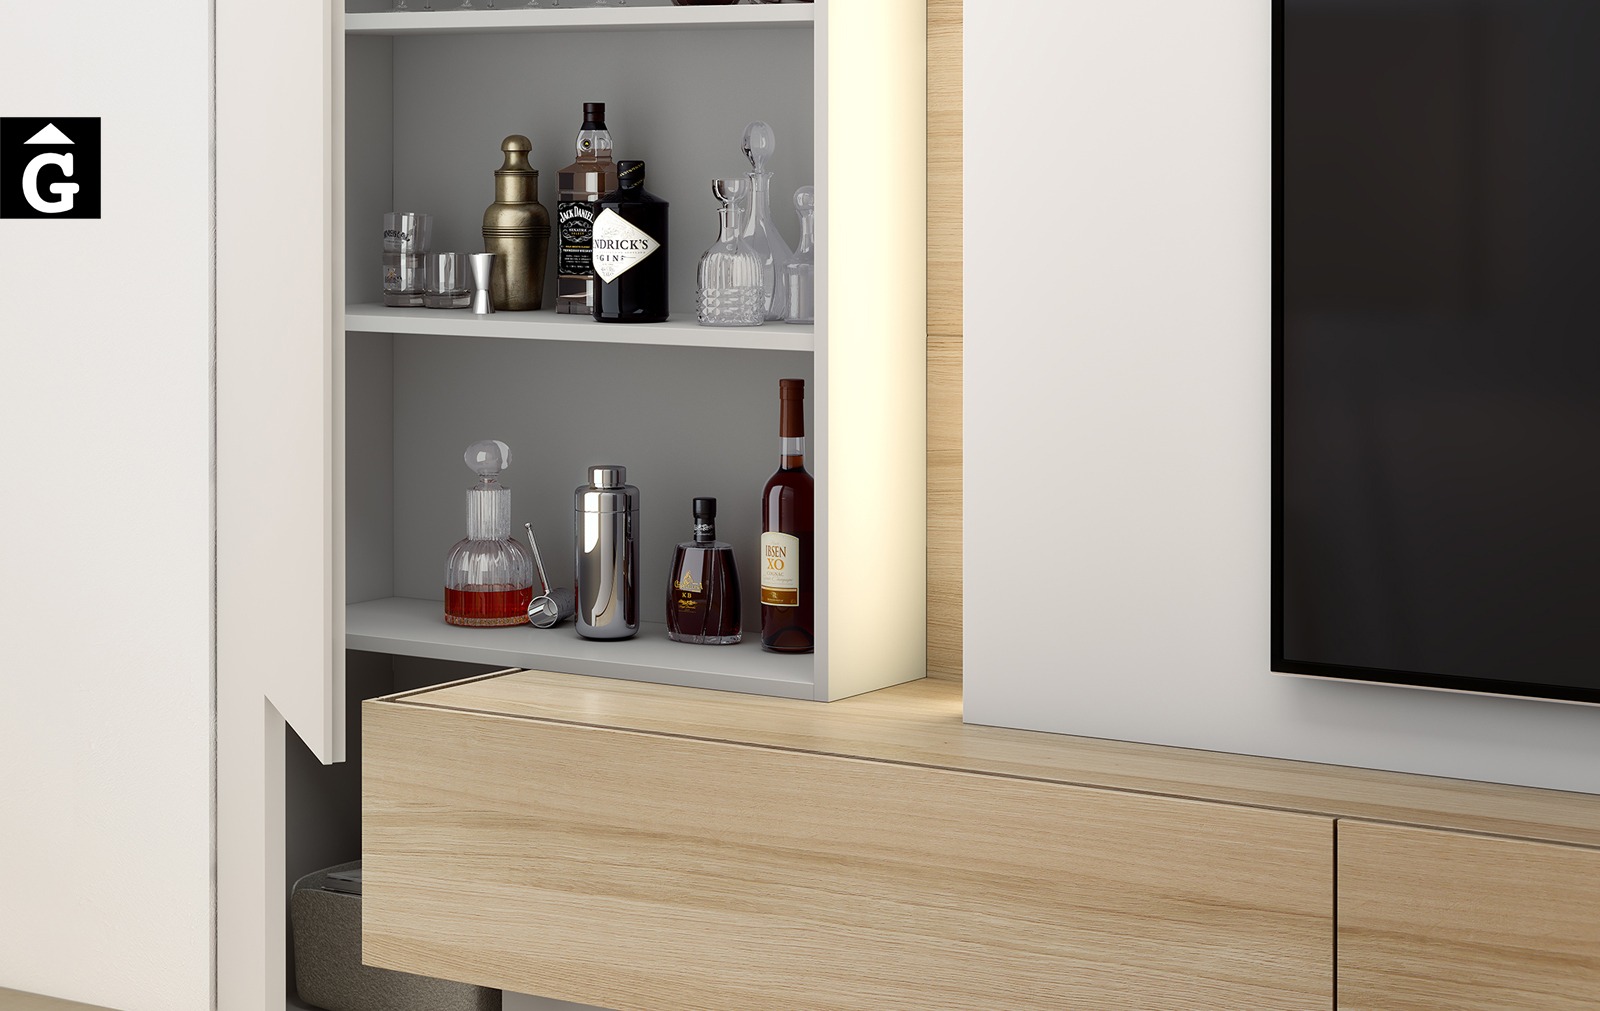 Moble Tv blanc amb panel llum led ambientdetall porta batent disseny atemporal realitzat amb materials qualitat estil modern minimalista